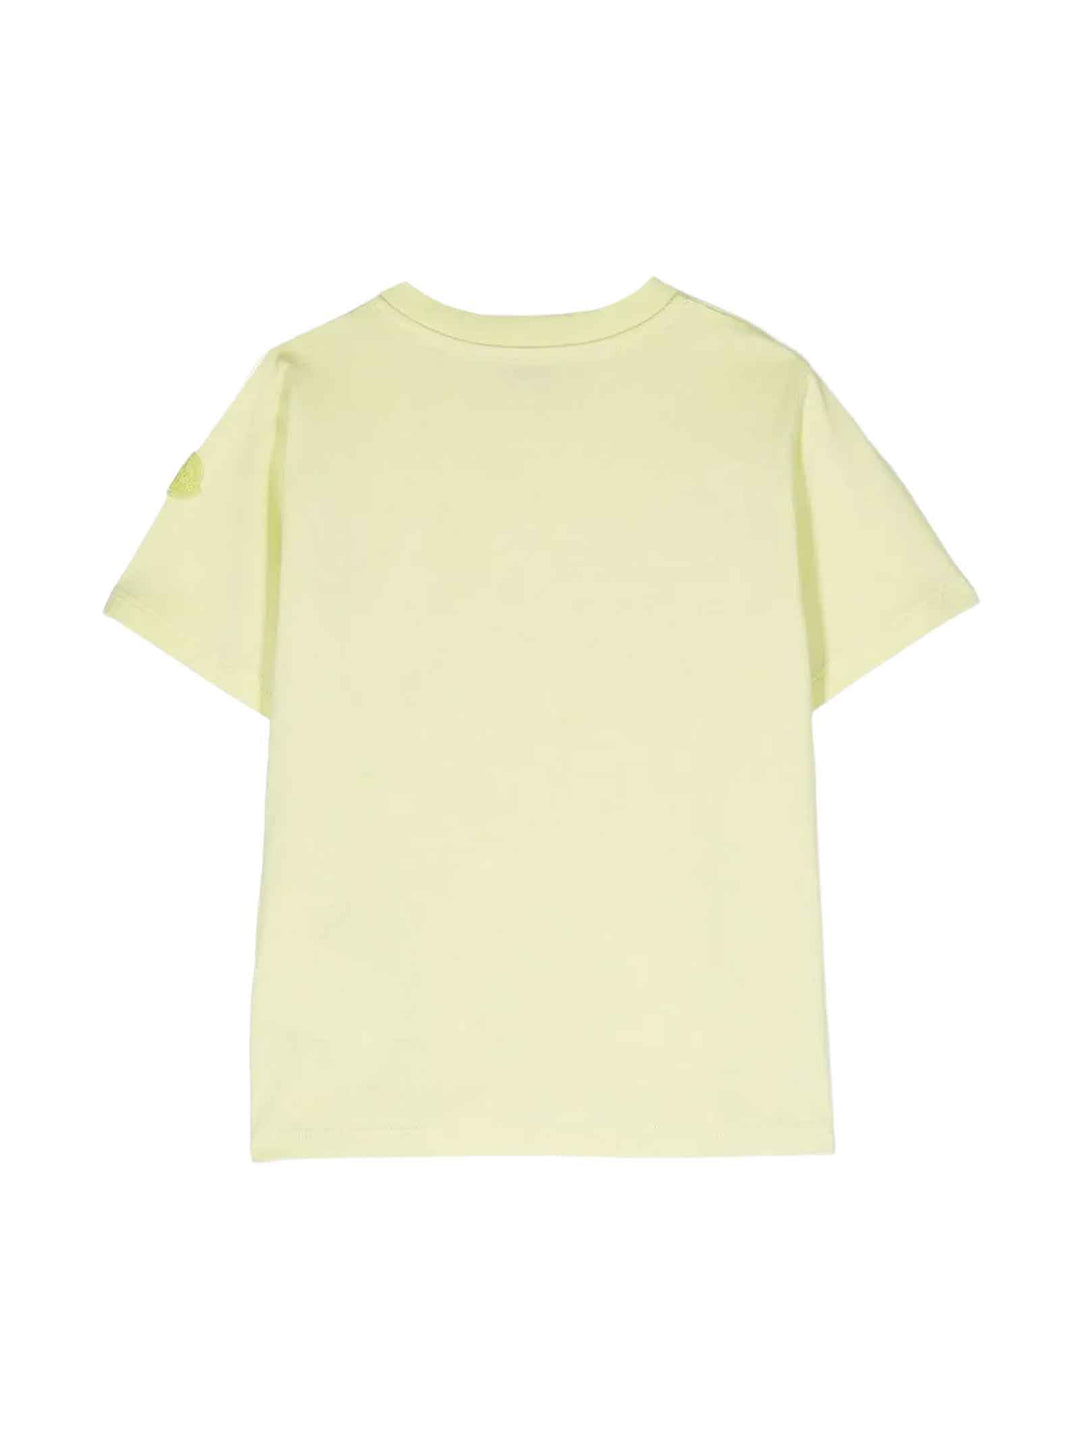 T-shirt citron vert unisexe